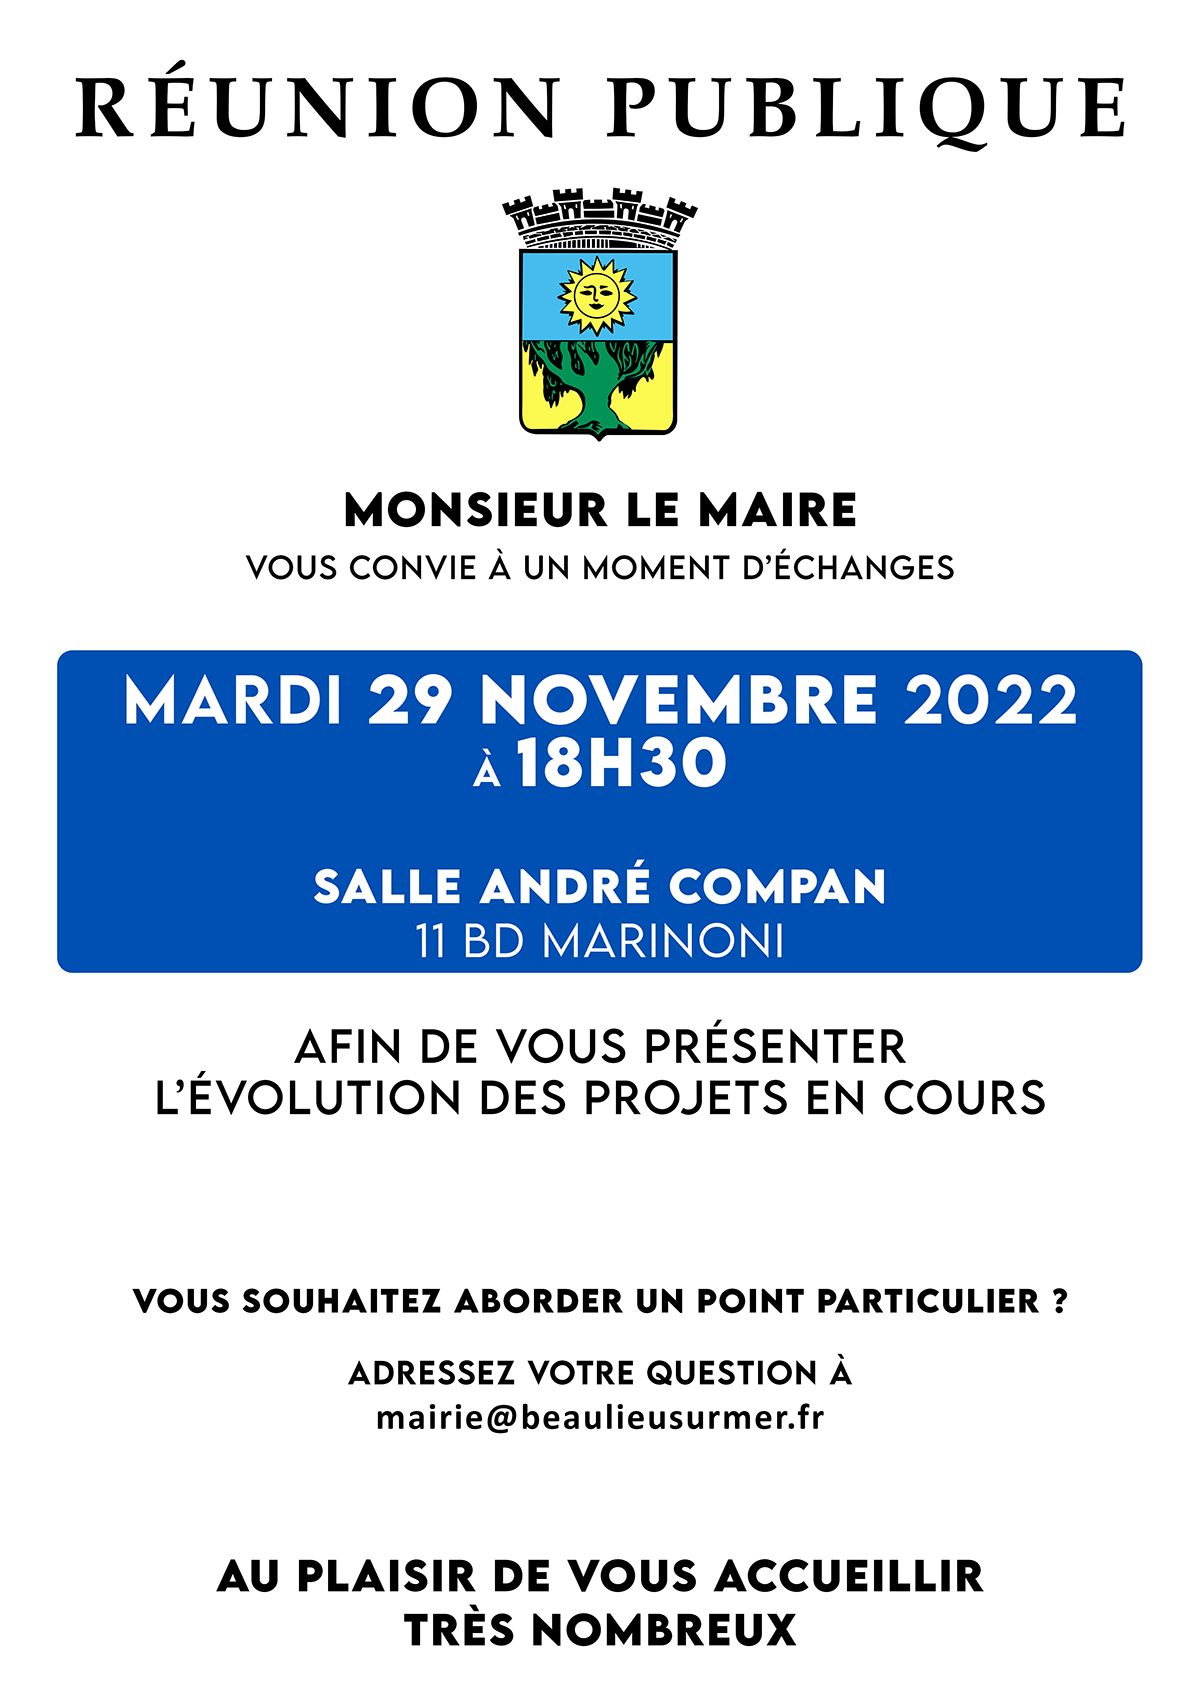 Réunion publique de Beaulieu-sur-Mer le 29 novembre 2022